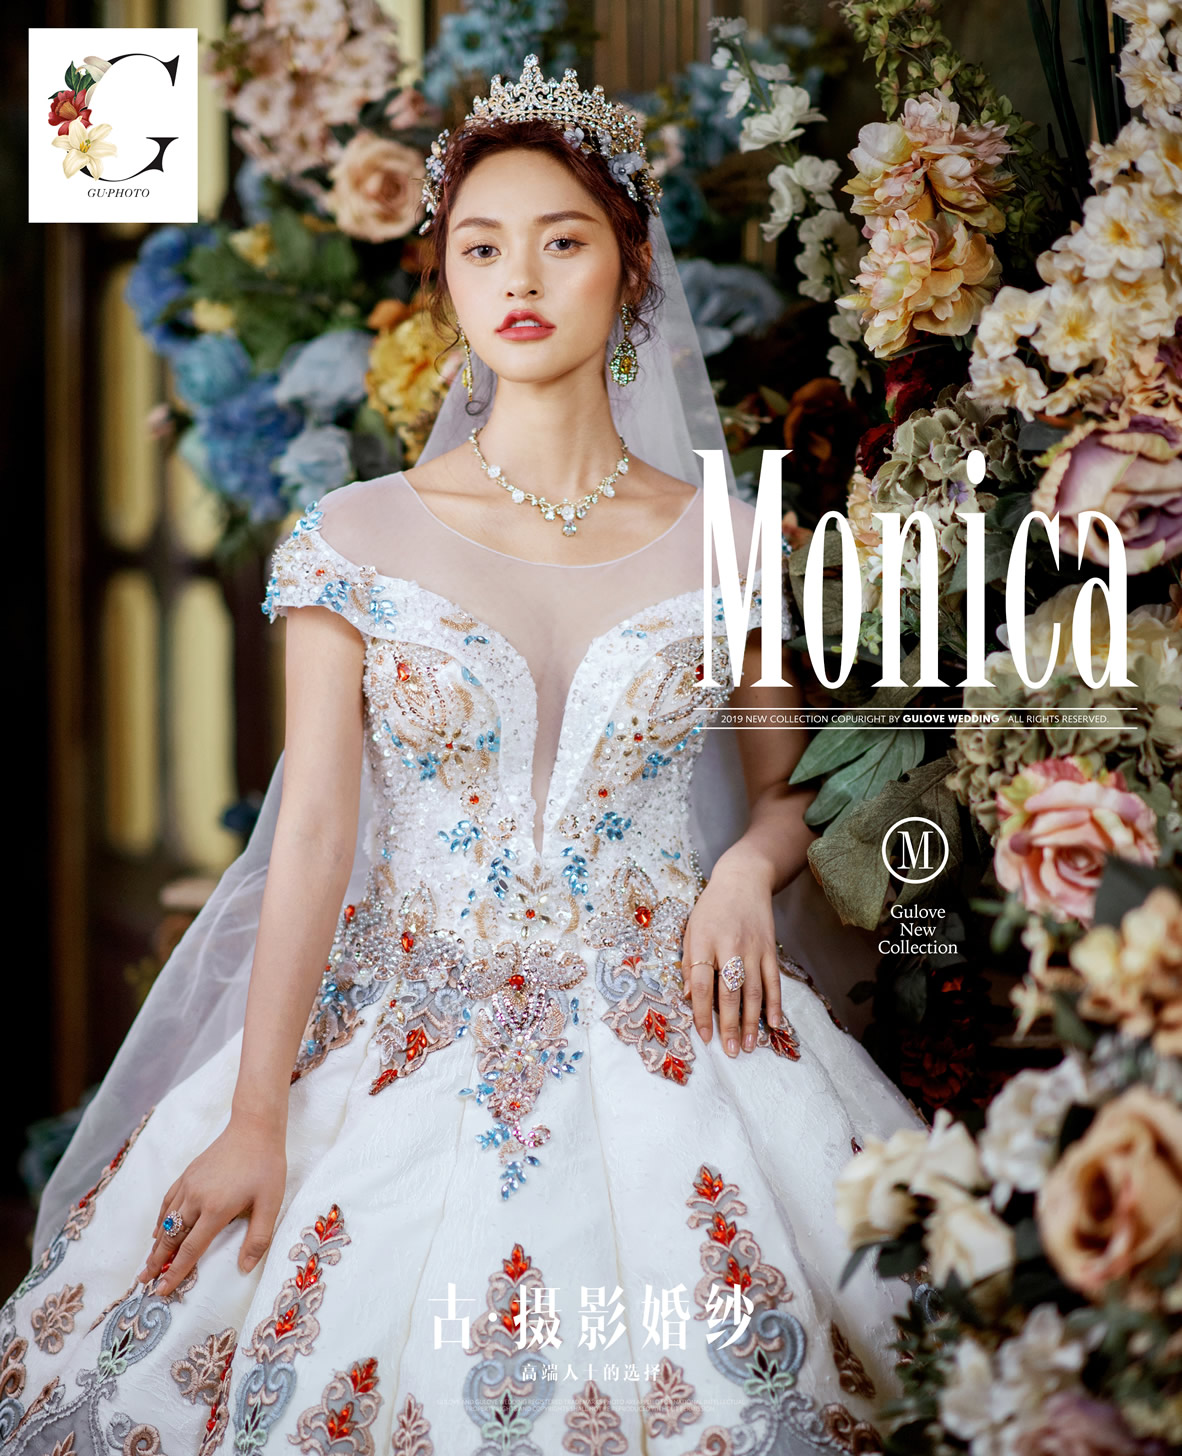 全新《MONICA》系列 - 明星范 - 古摄影婚纱艺术-古摄影成都婚纱摄影艺术摄影网